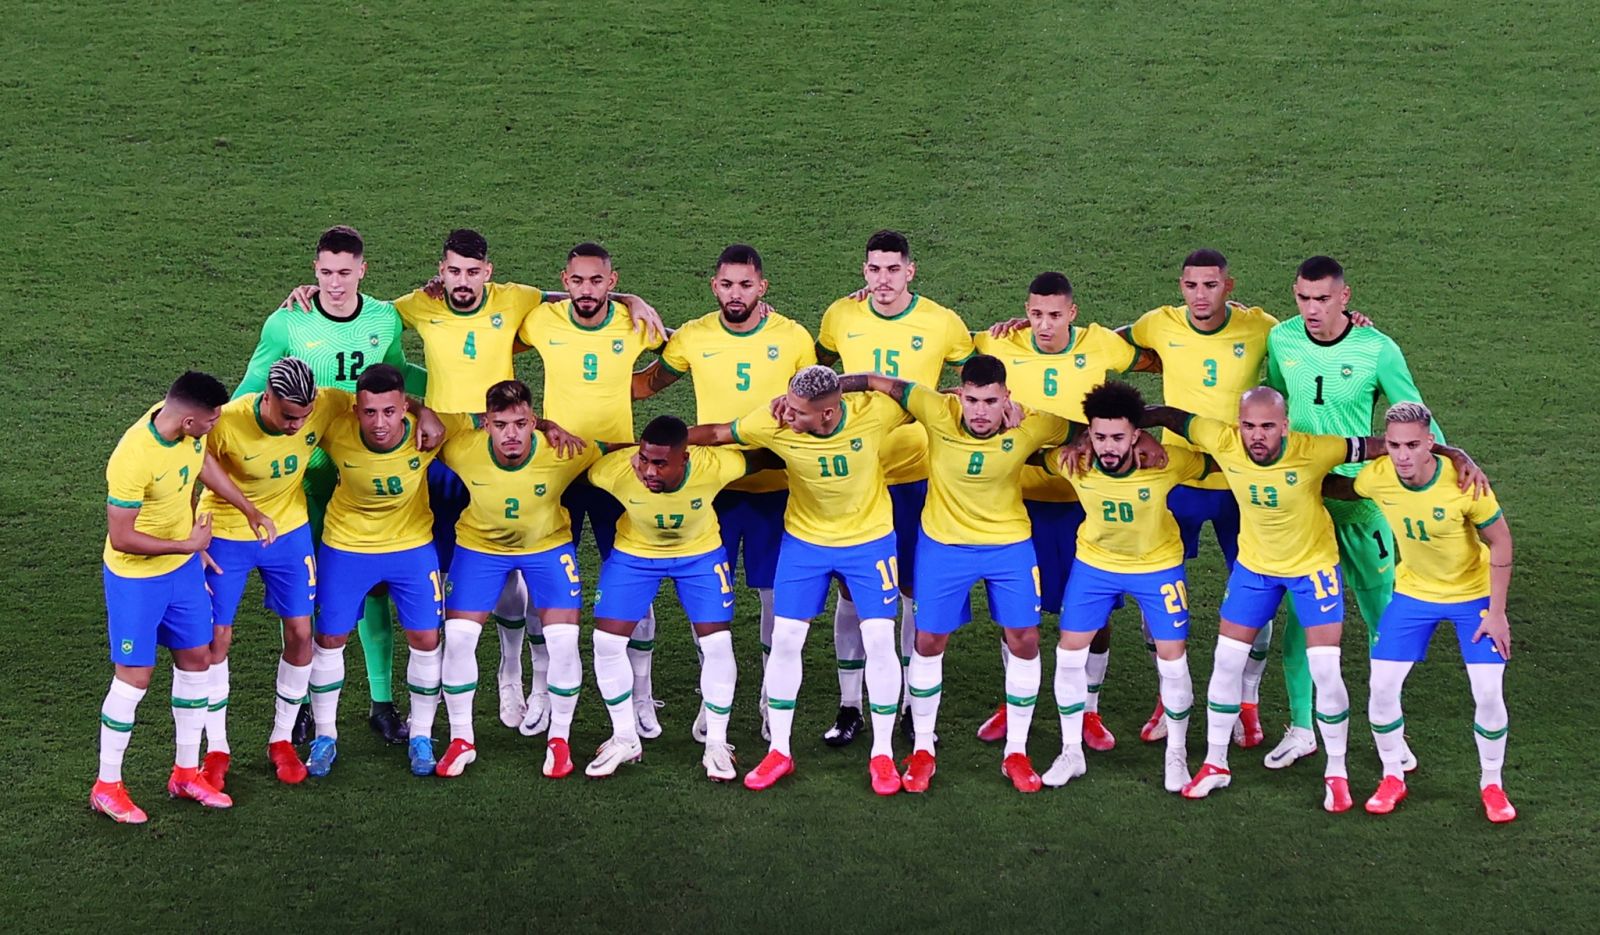 Bóng đá nam Olympic Tokyo 2020: Brazil giành HCV sau khi đánh bại Tây Ban Nha 2-1